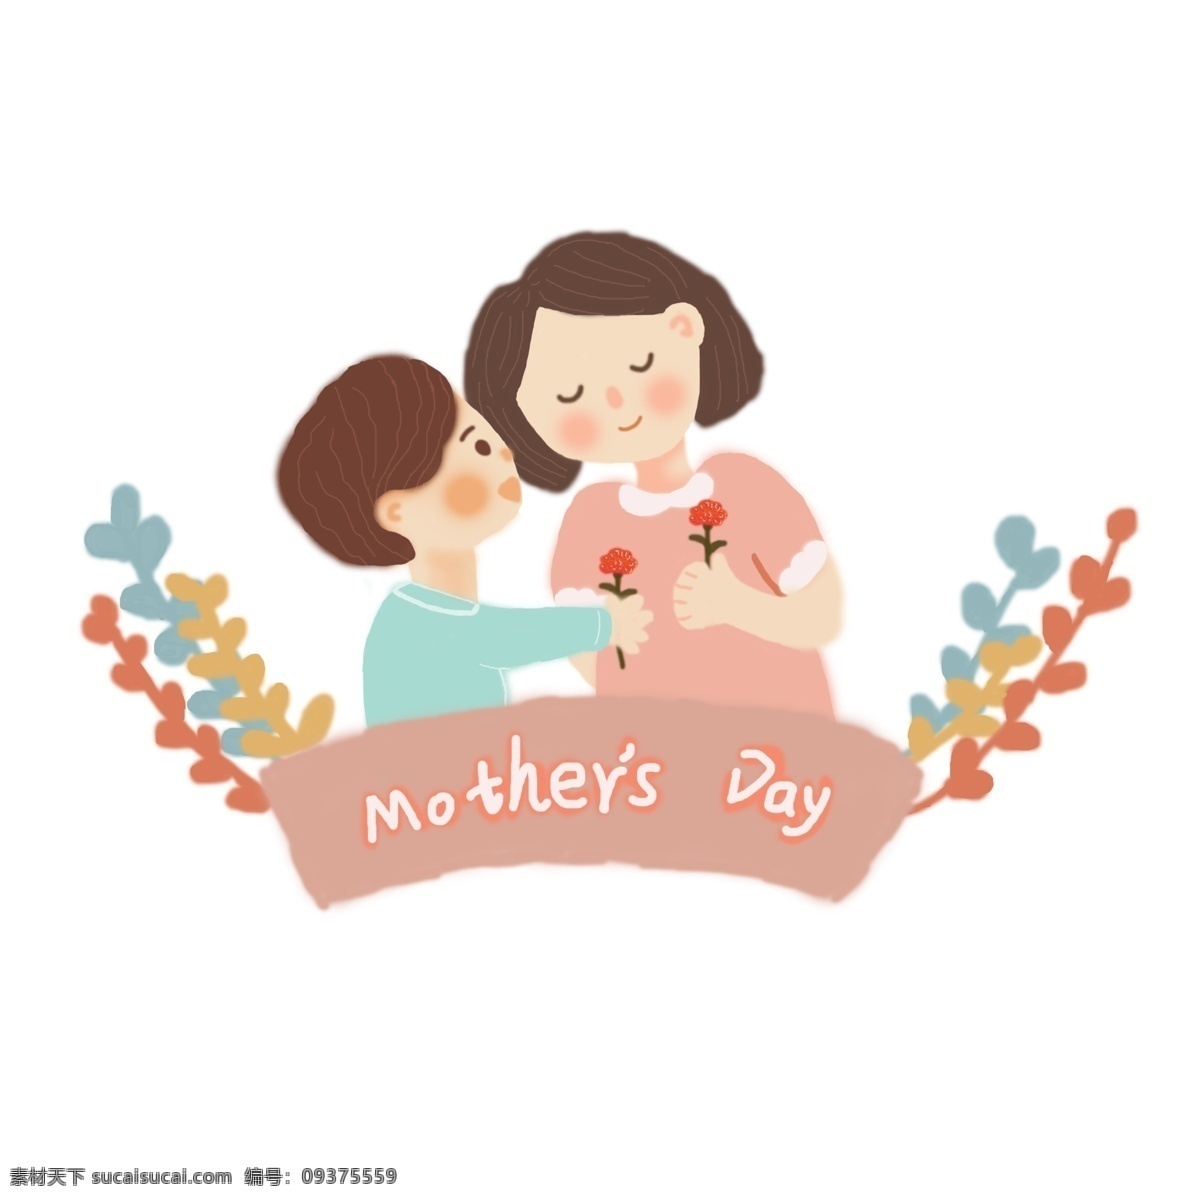 母亲节 儿子 送花 妈妈 插画 亲情 母子 温馨 幸福 花朵 手绘 免抠 矢量